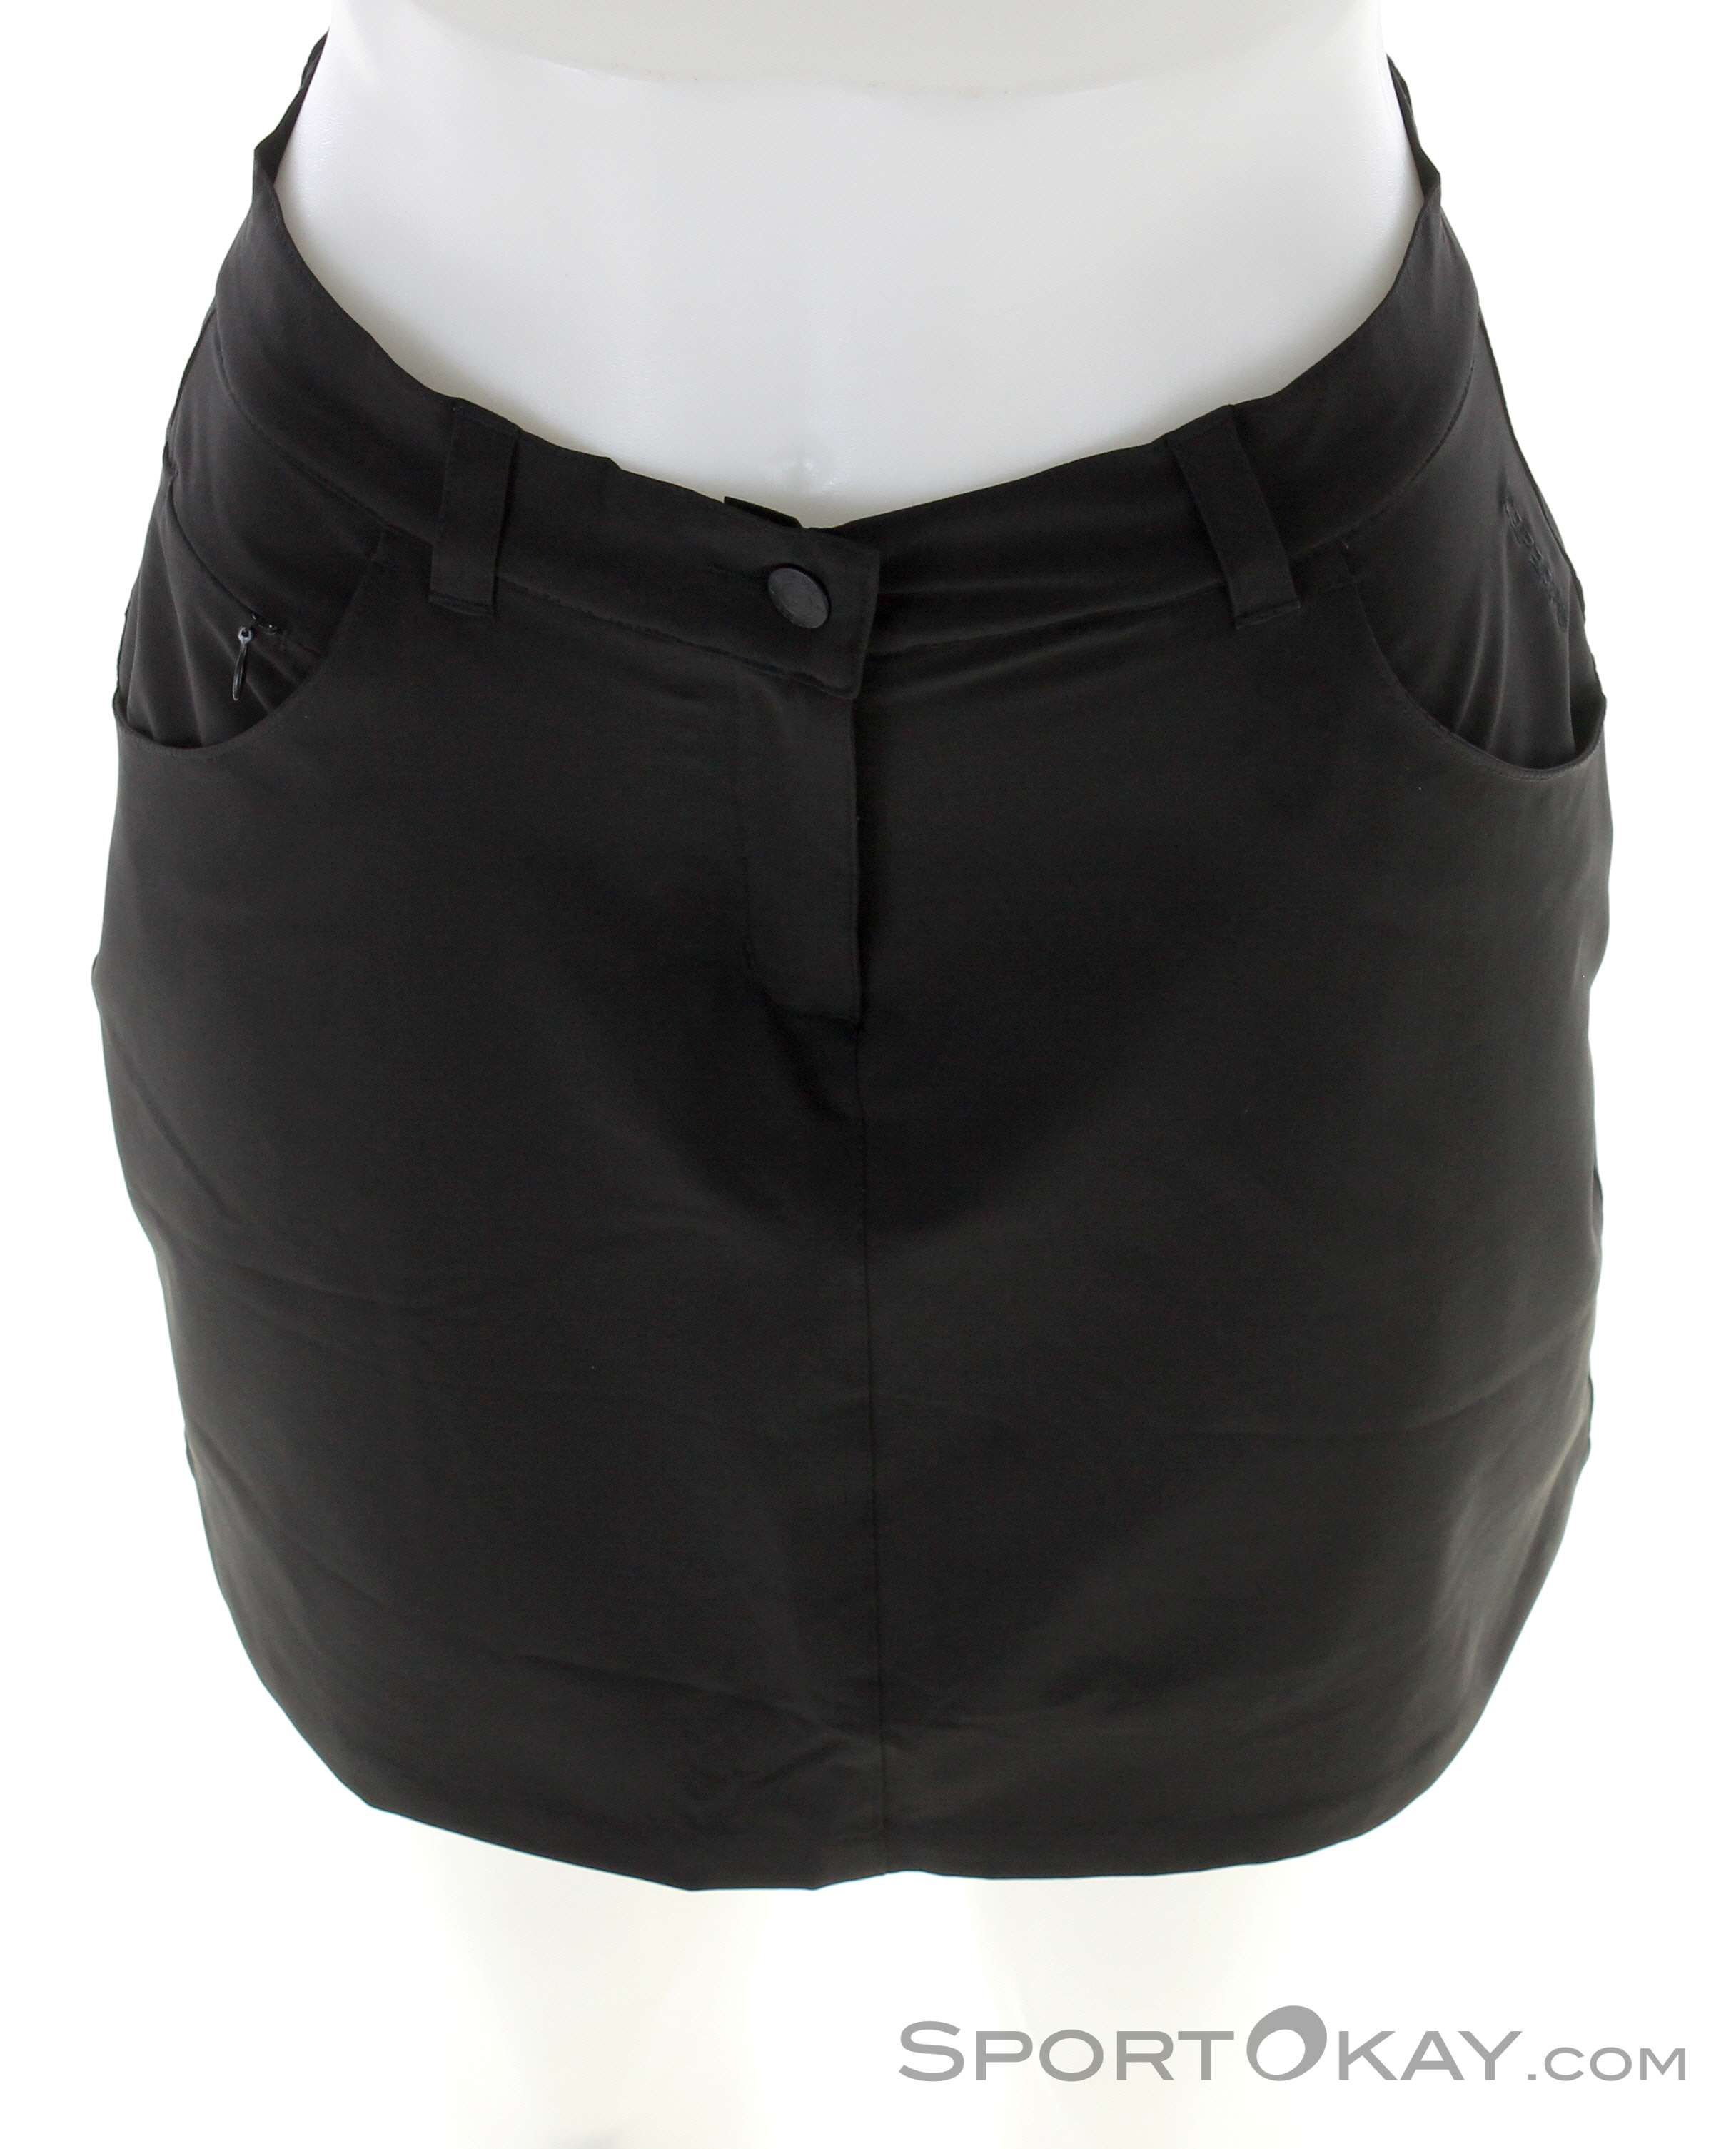 Icepeak Bedra Skirt - Clothing Pants Women - Outdoor - Skirt Outdoor All - Outdoor